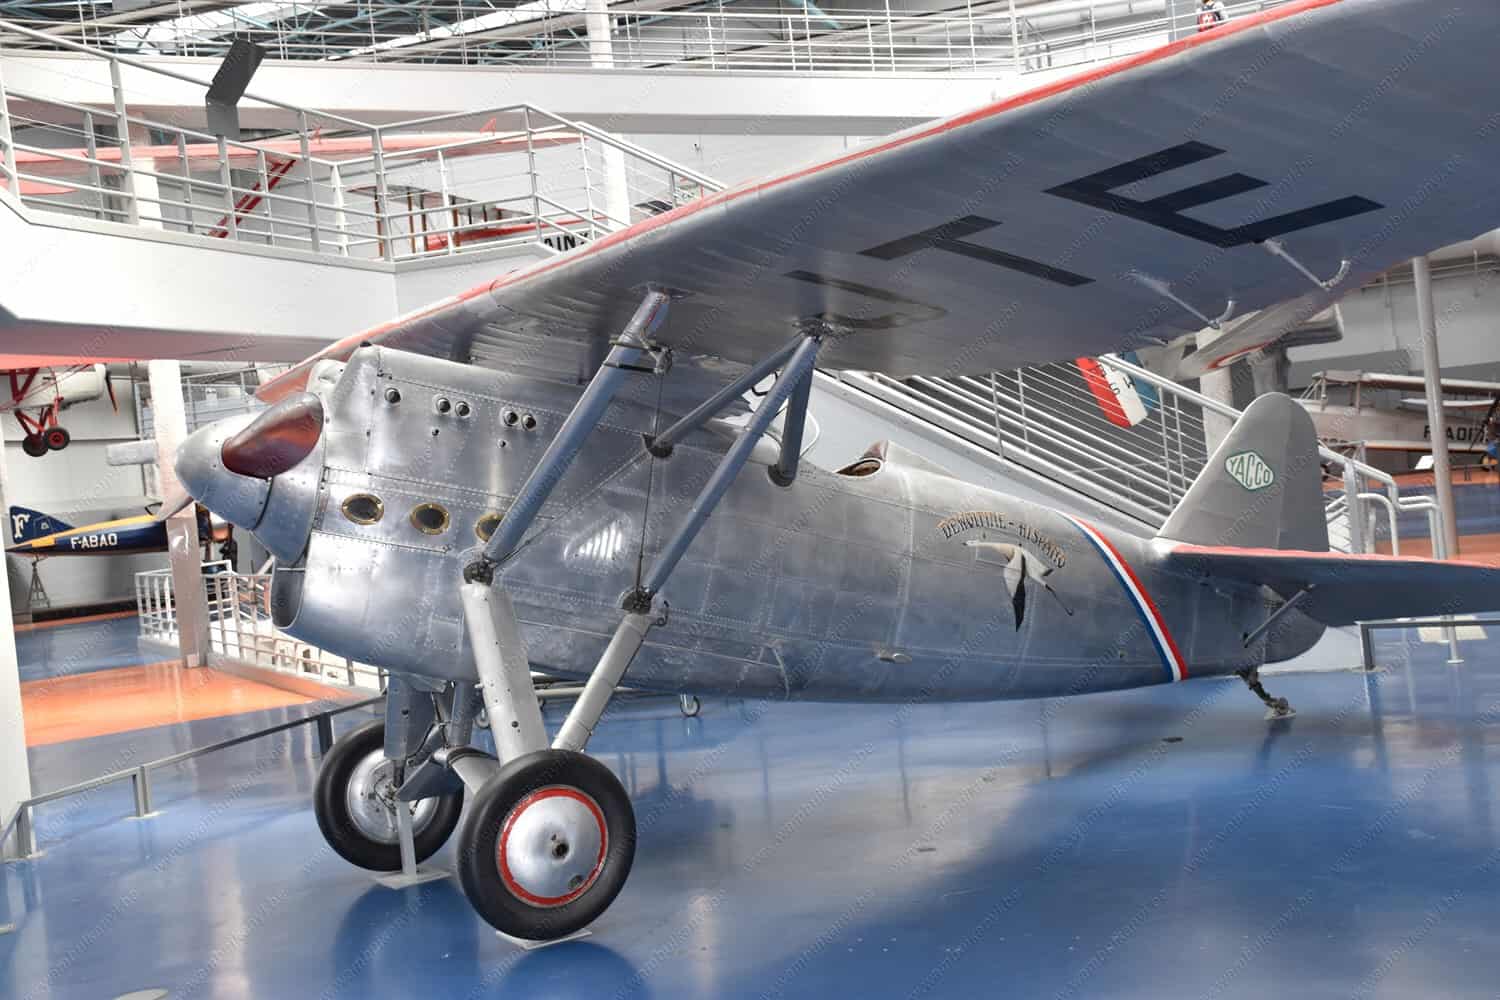 Plane Museum in Paris